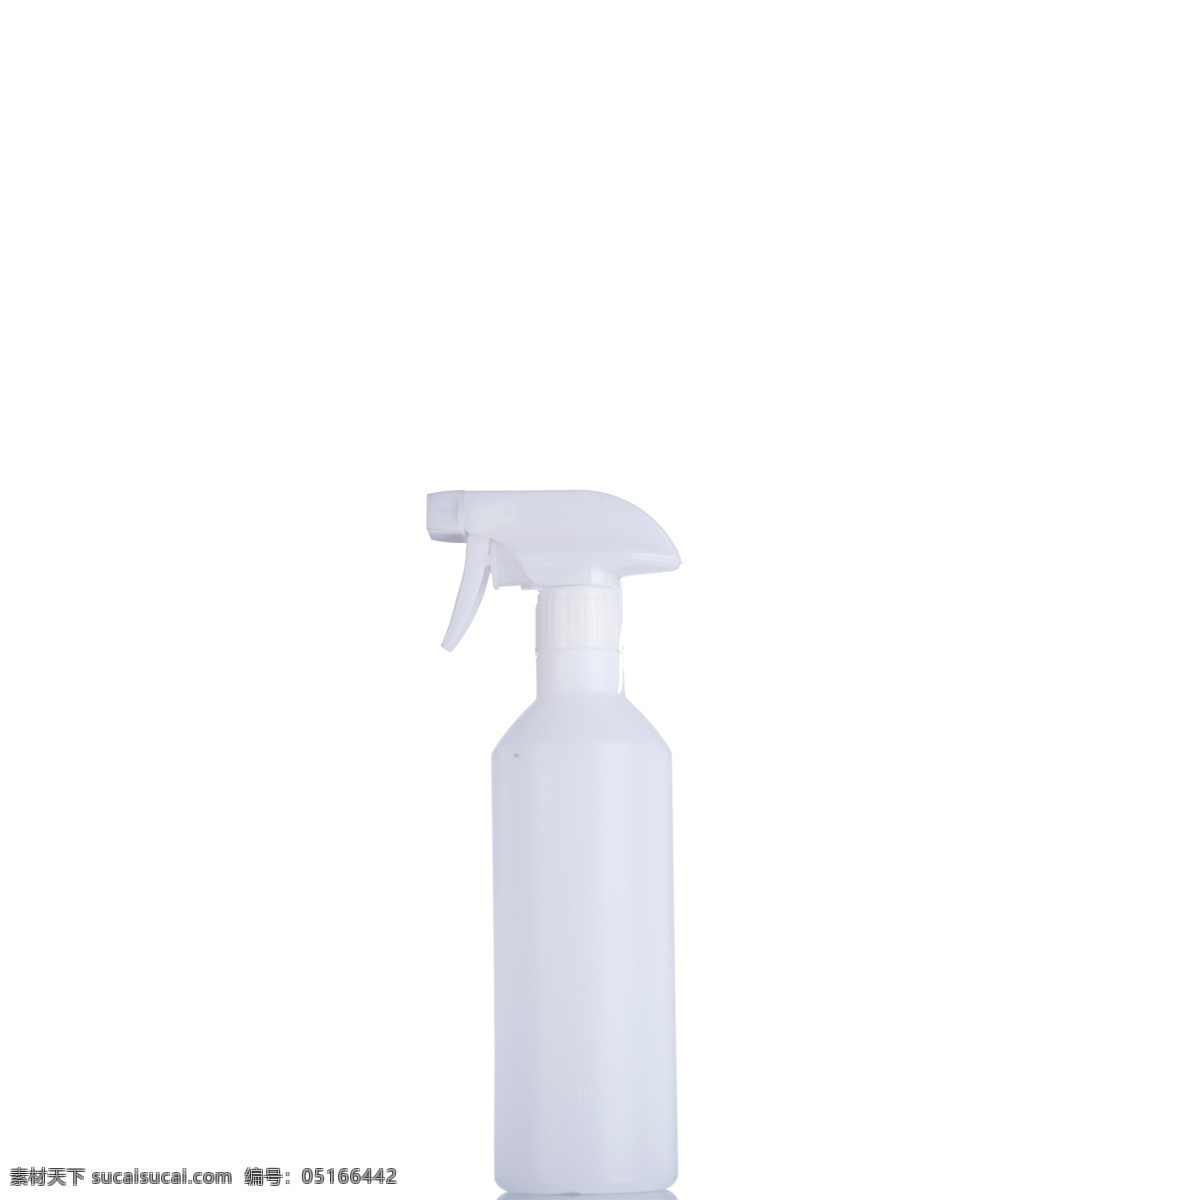 白色 塑料 瓶子 免 抠 图 洗洁精 四个瓶子 洗浴用品 卫生用品 白色的瓶子 洗发水 喷雾 塑料瓶子 白色清洁用品